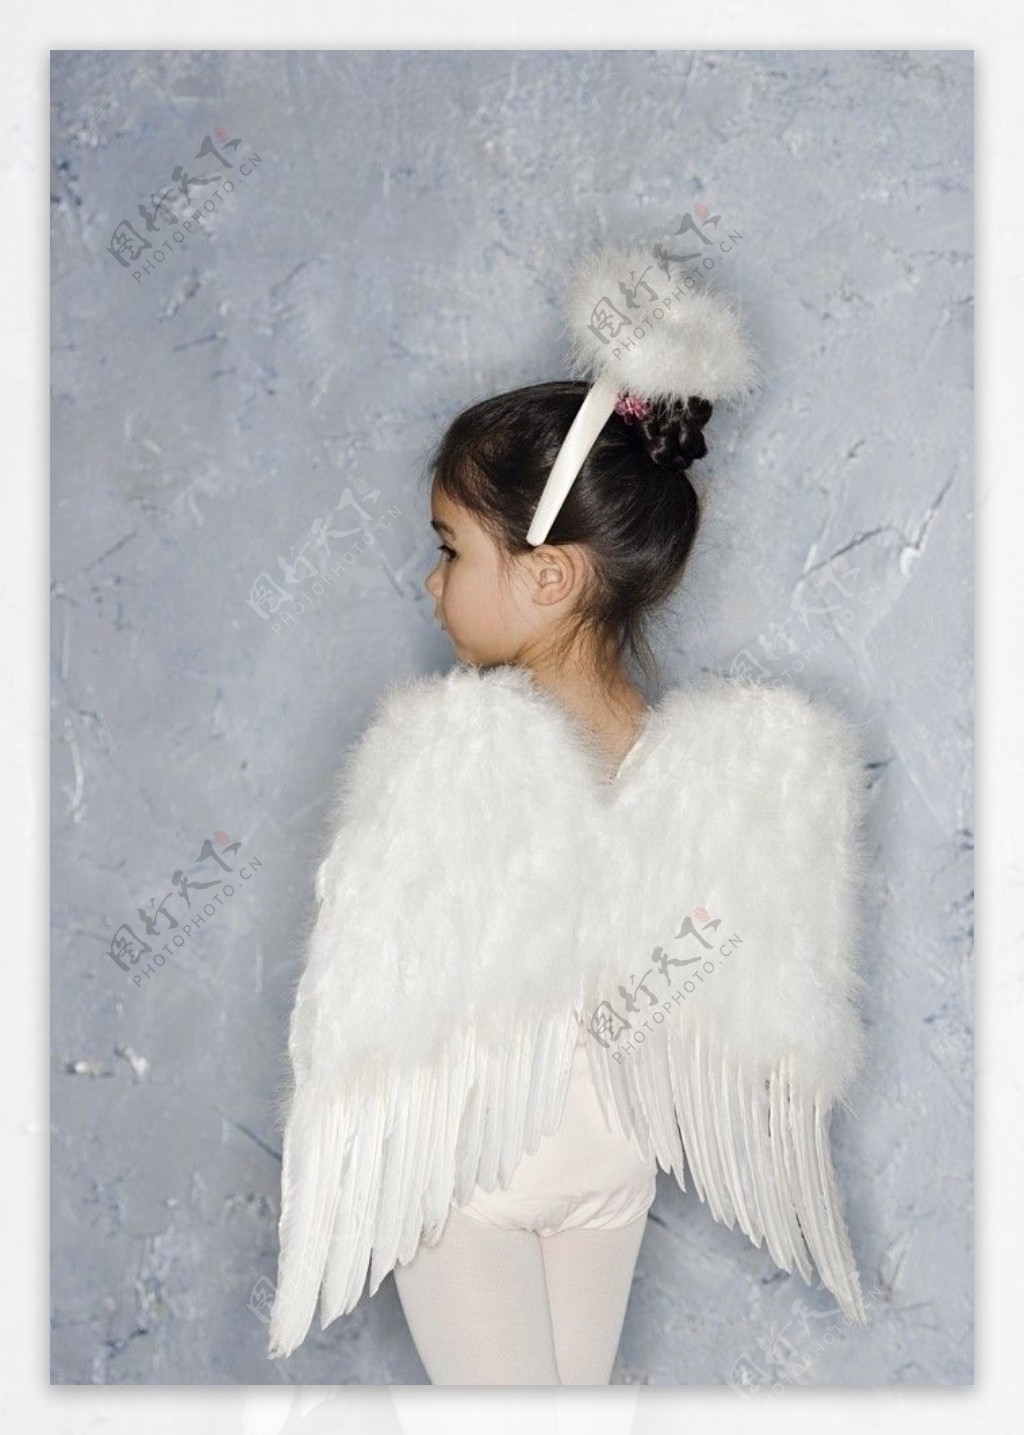 打扮成天使的漂亮小女孩图片